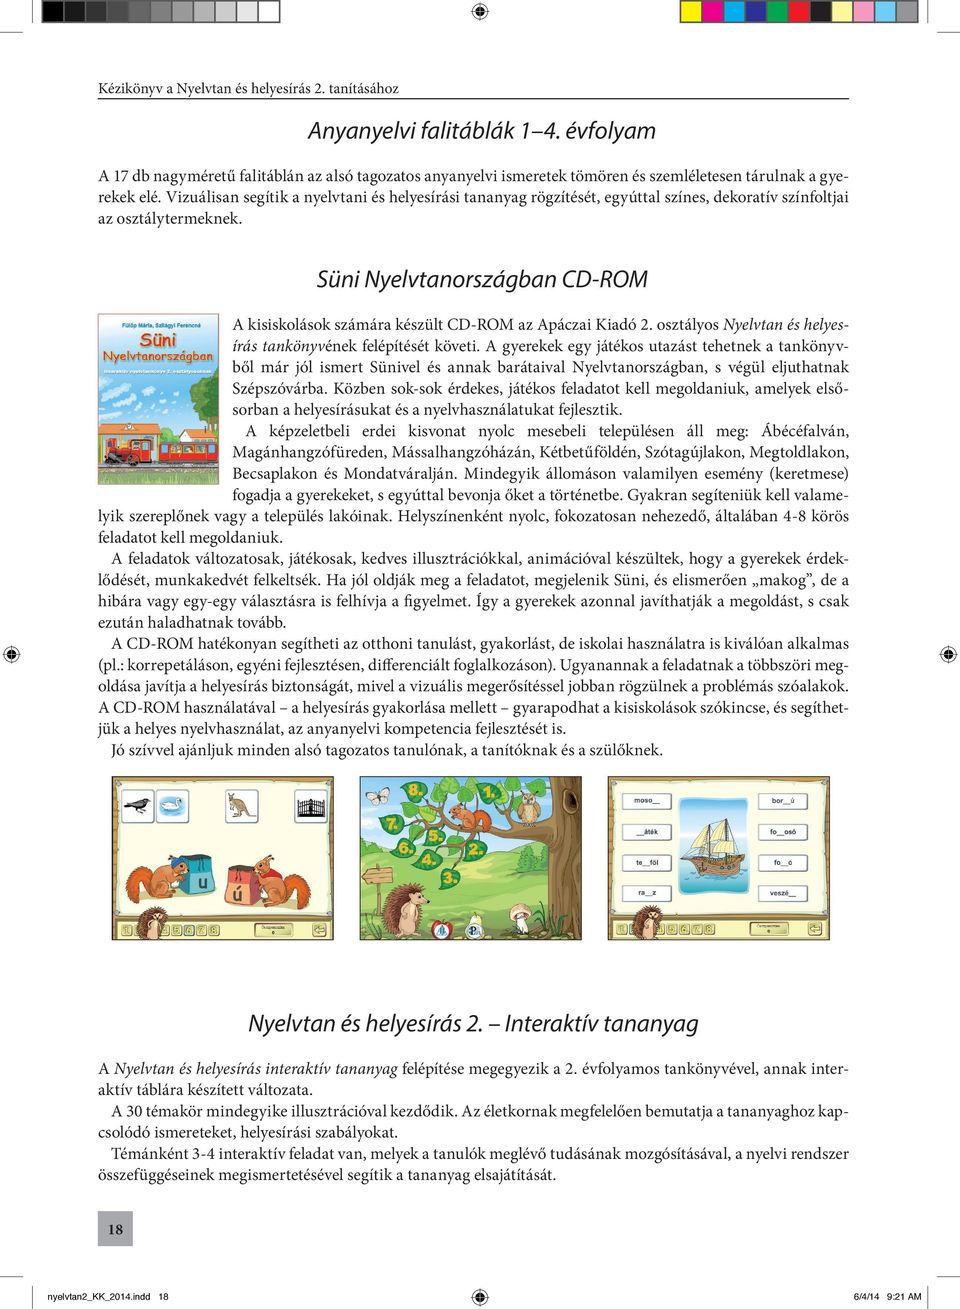 Süni Nyelvtanországban CD-ROM A kisiskolások számára készült CD-ROM az Apáczai Kiadó 2. osztályos Nyelvtan és helyesírás tankönyvének felépítését követi.